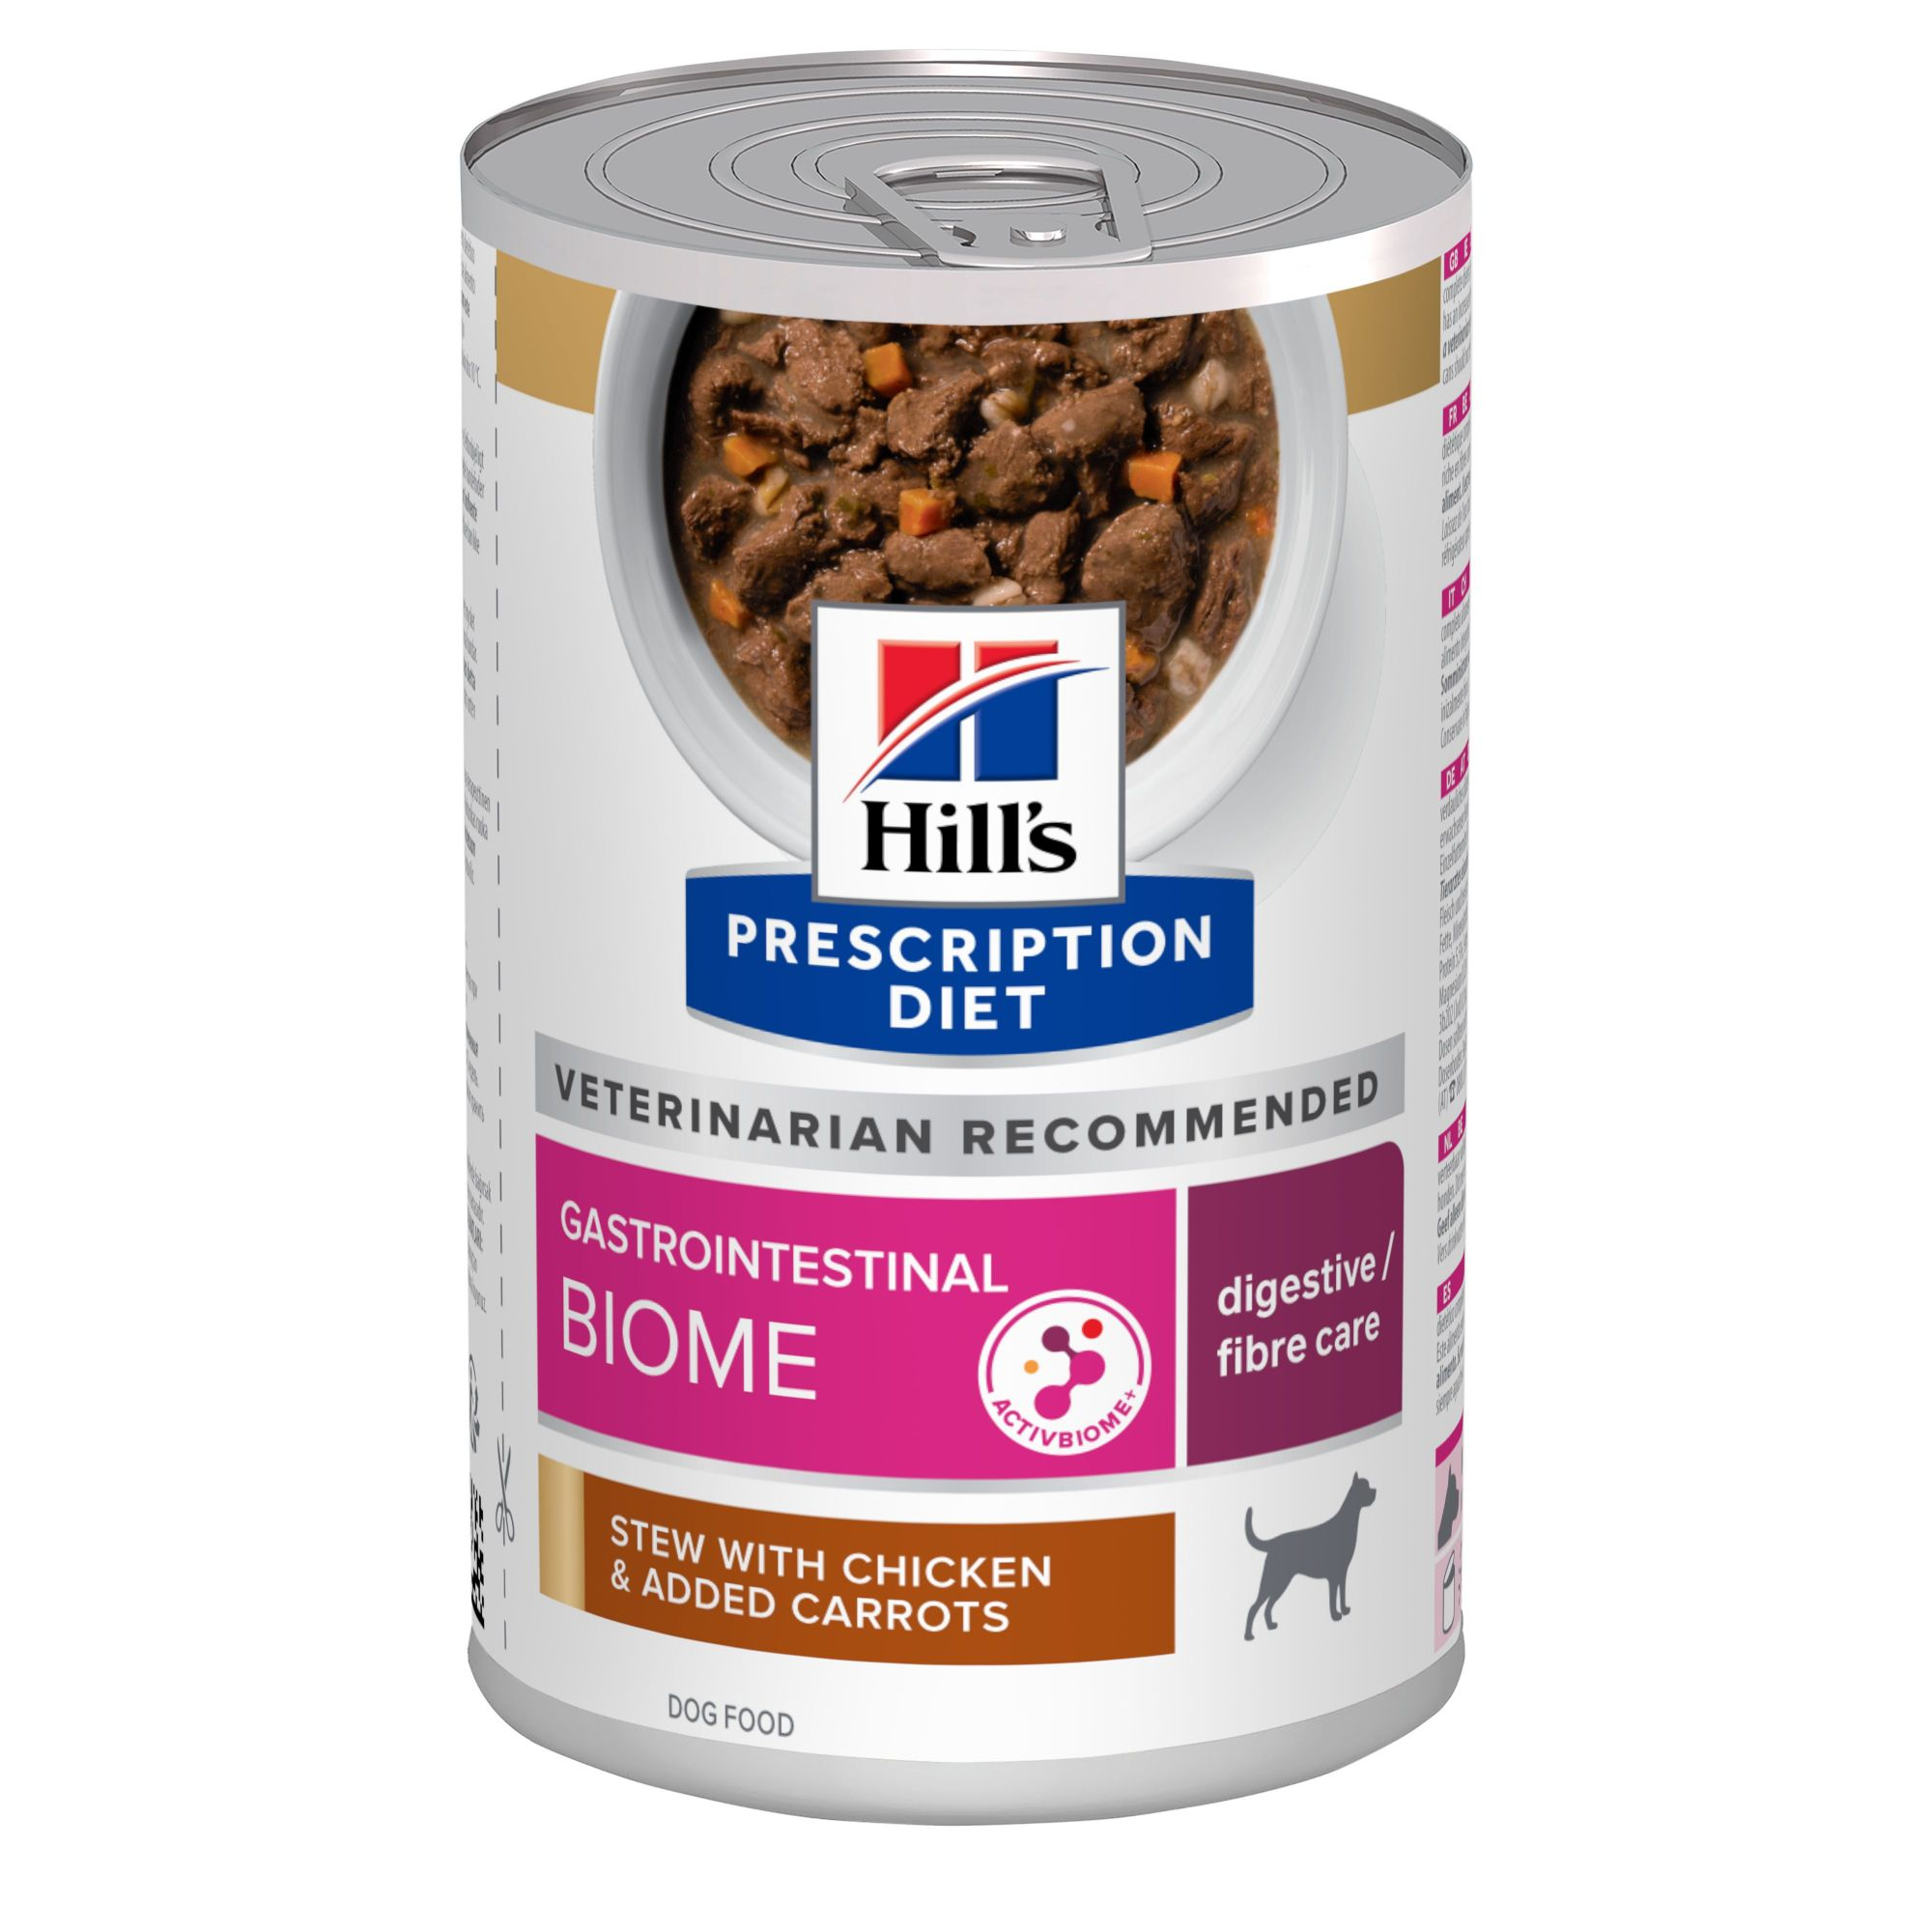 Hill's Prescription Diet Gastro-intestinal Biome ensopados para cães